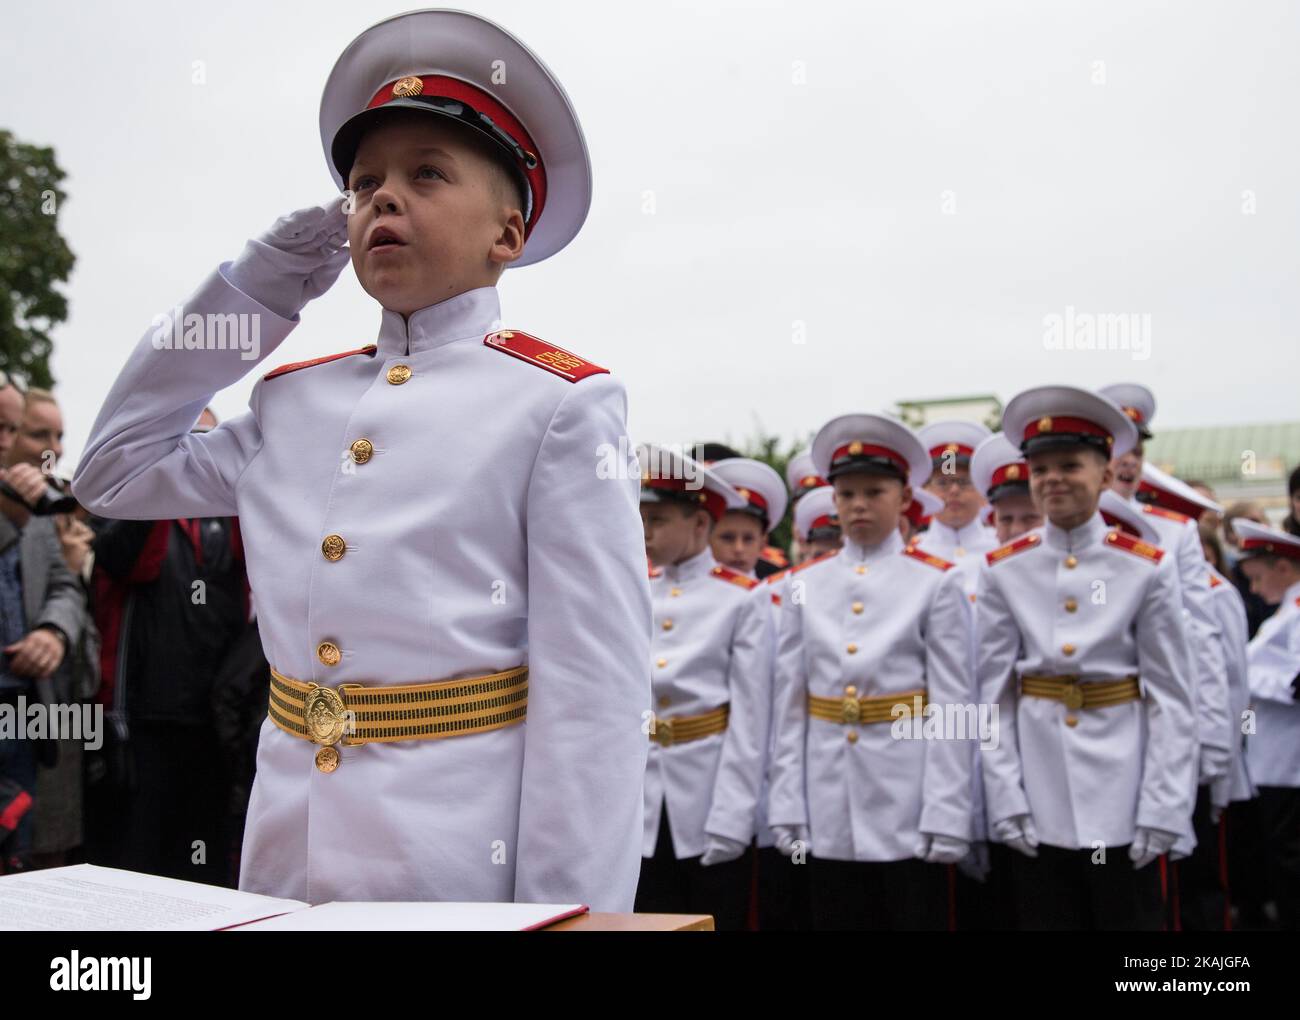 Les cadets de l'École militaire de Suvorov assistent à une cérémonie au début de l'année scolaire, connue sous le nom de « Journée de la connaissance » à Saint-Pétersbourg, sur 1 septembre 2016. Les écoles militaires de Suvorov sont un type d'école pour les garçons de 14-18 ans, et portent le nom du grand général de 18th siècle Alexandre Suvorov. Banque D'Images